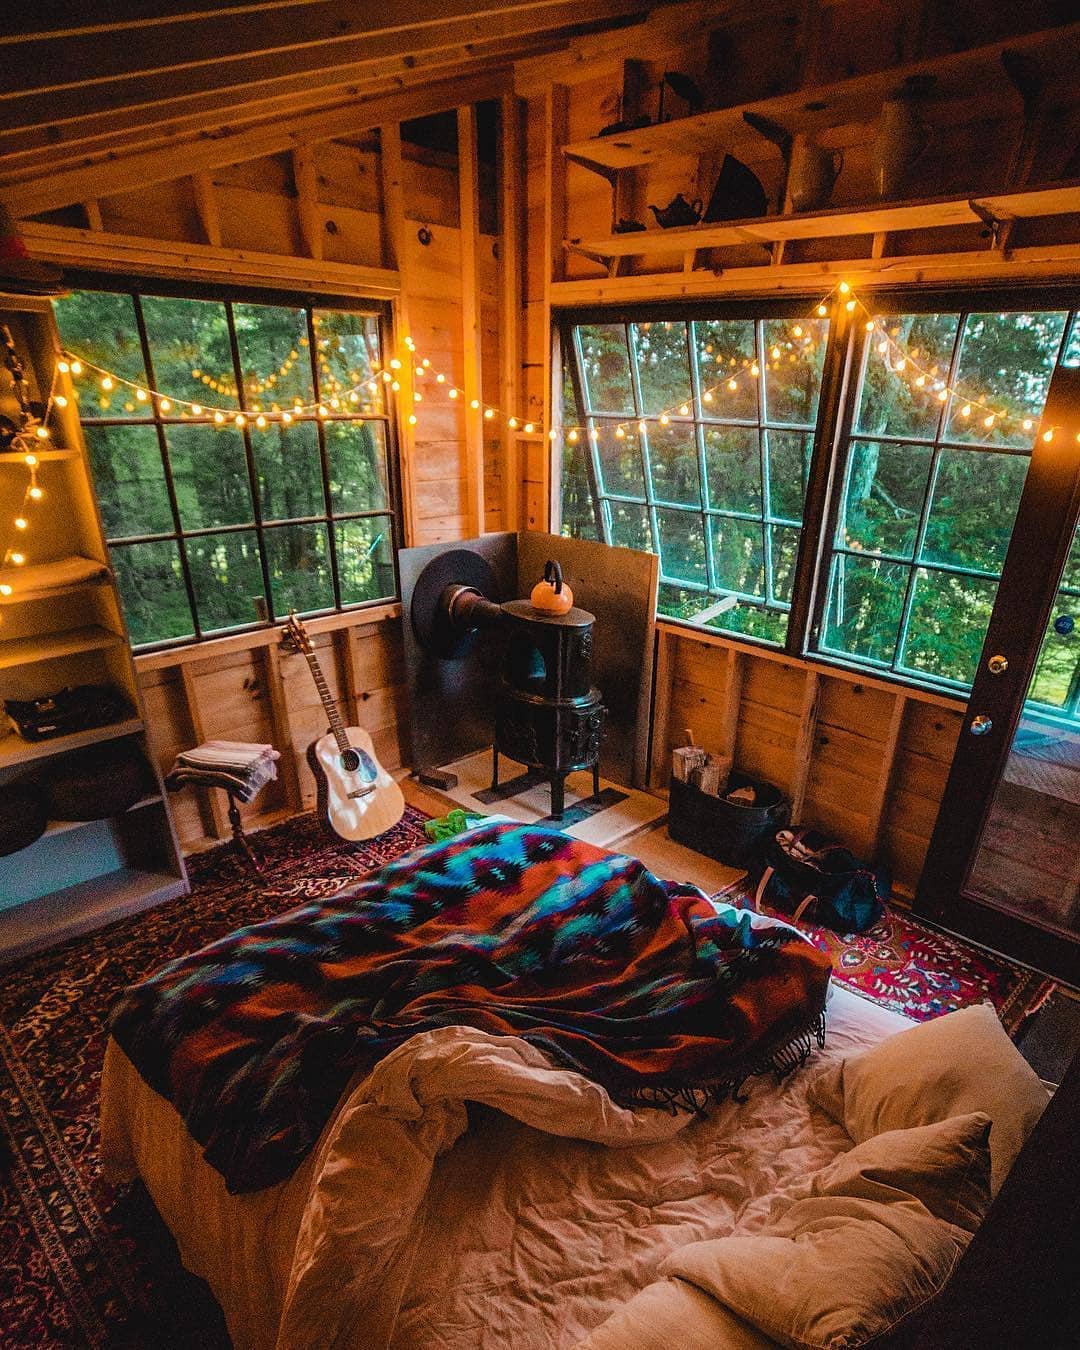 Guirlande lumineuse intérieur chalet bois, lit grand avec couverture hippie chic déco chalet montagne, cool idée comment décorer une chambre à coucher cosy